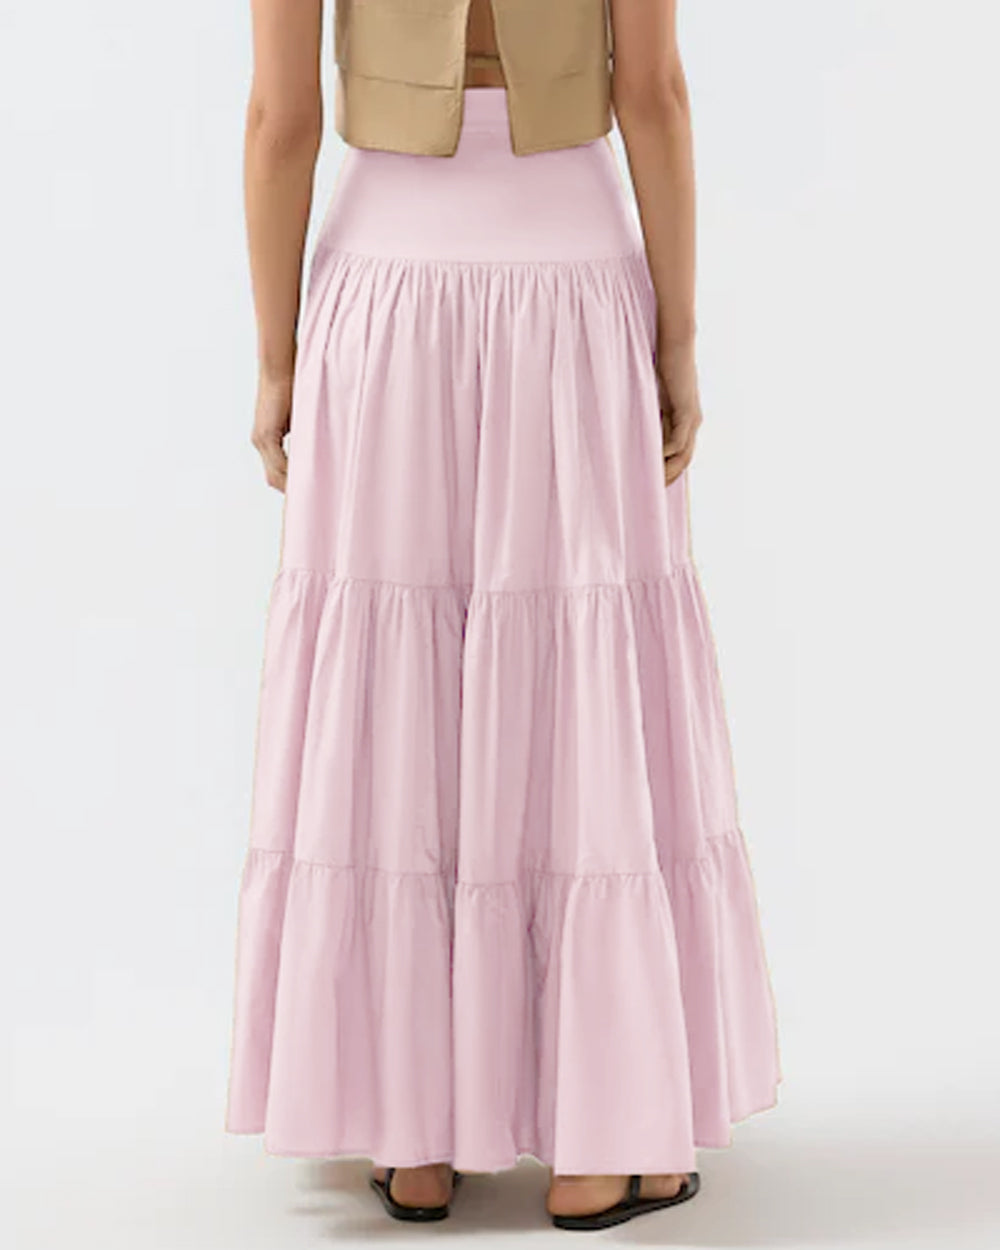 Shell Pink Elouise Skirt